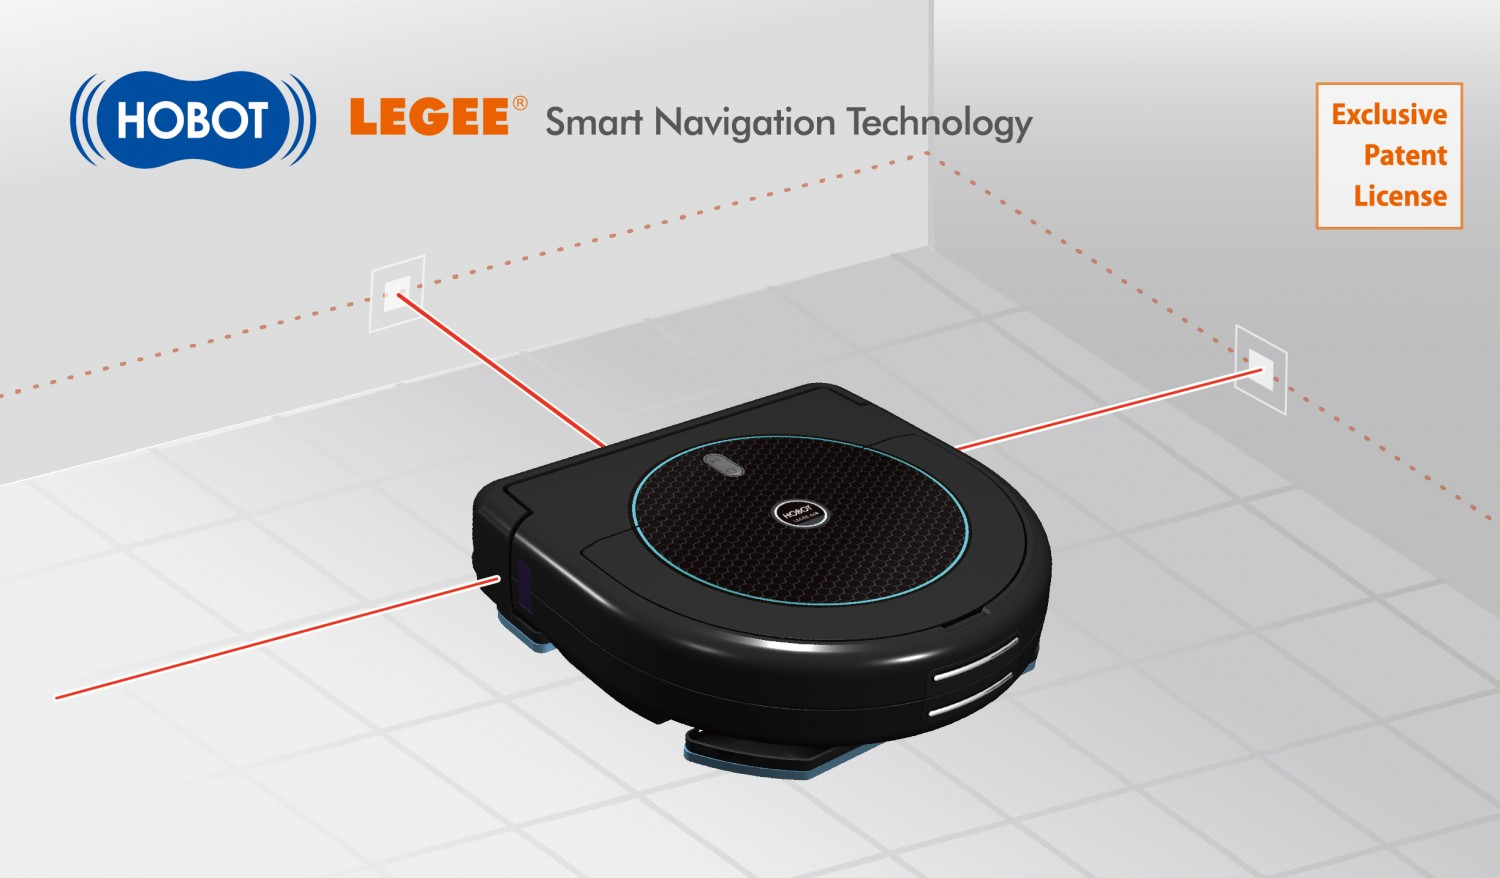 LEGEE Smart Navigation Technology